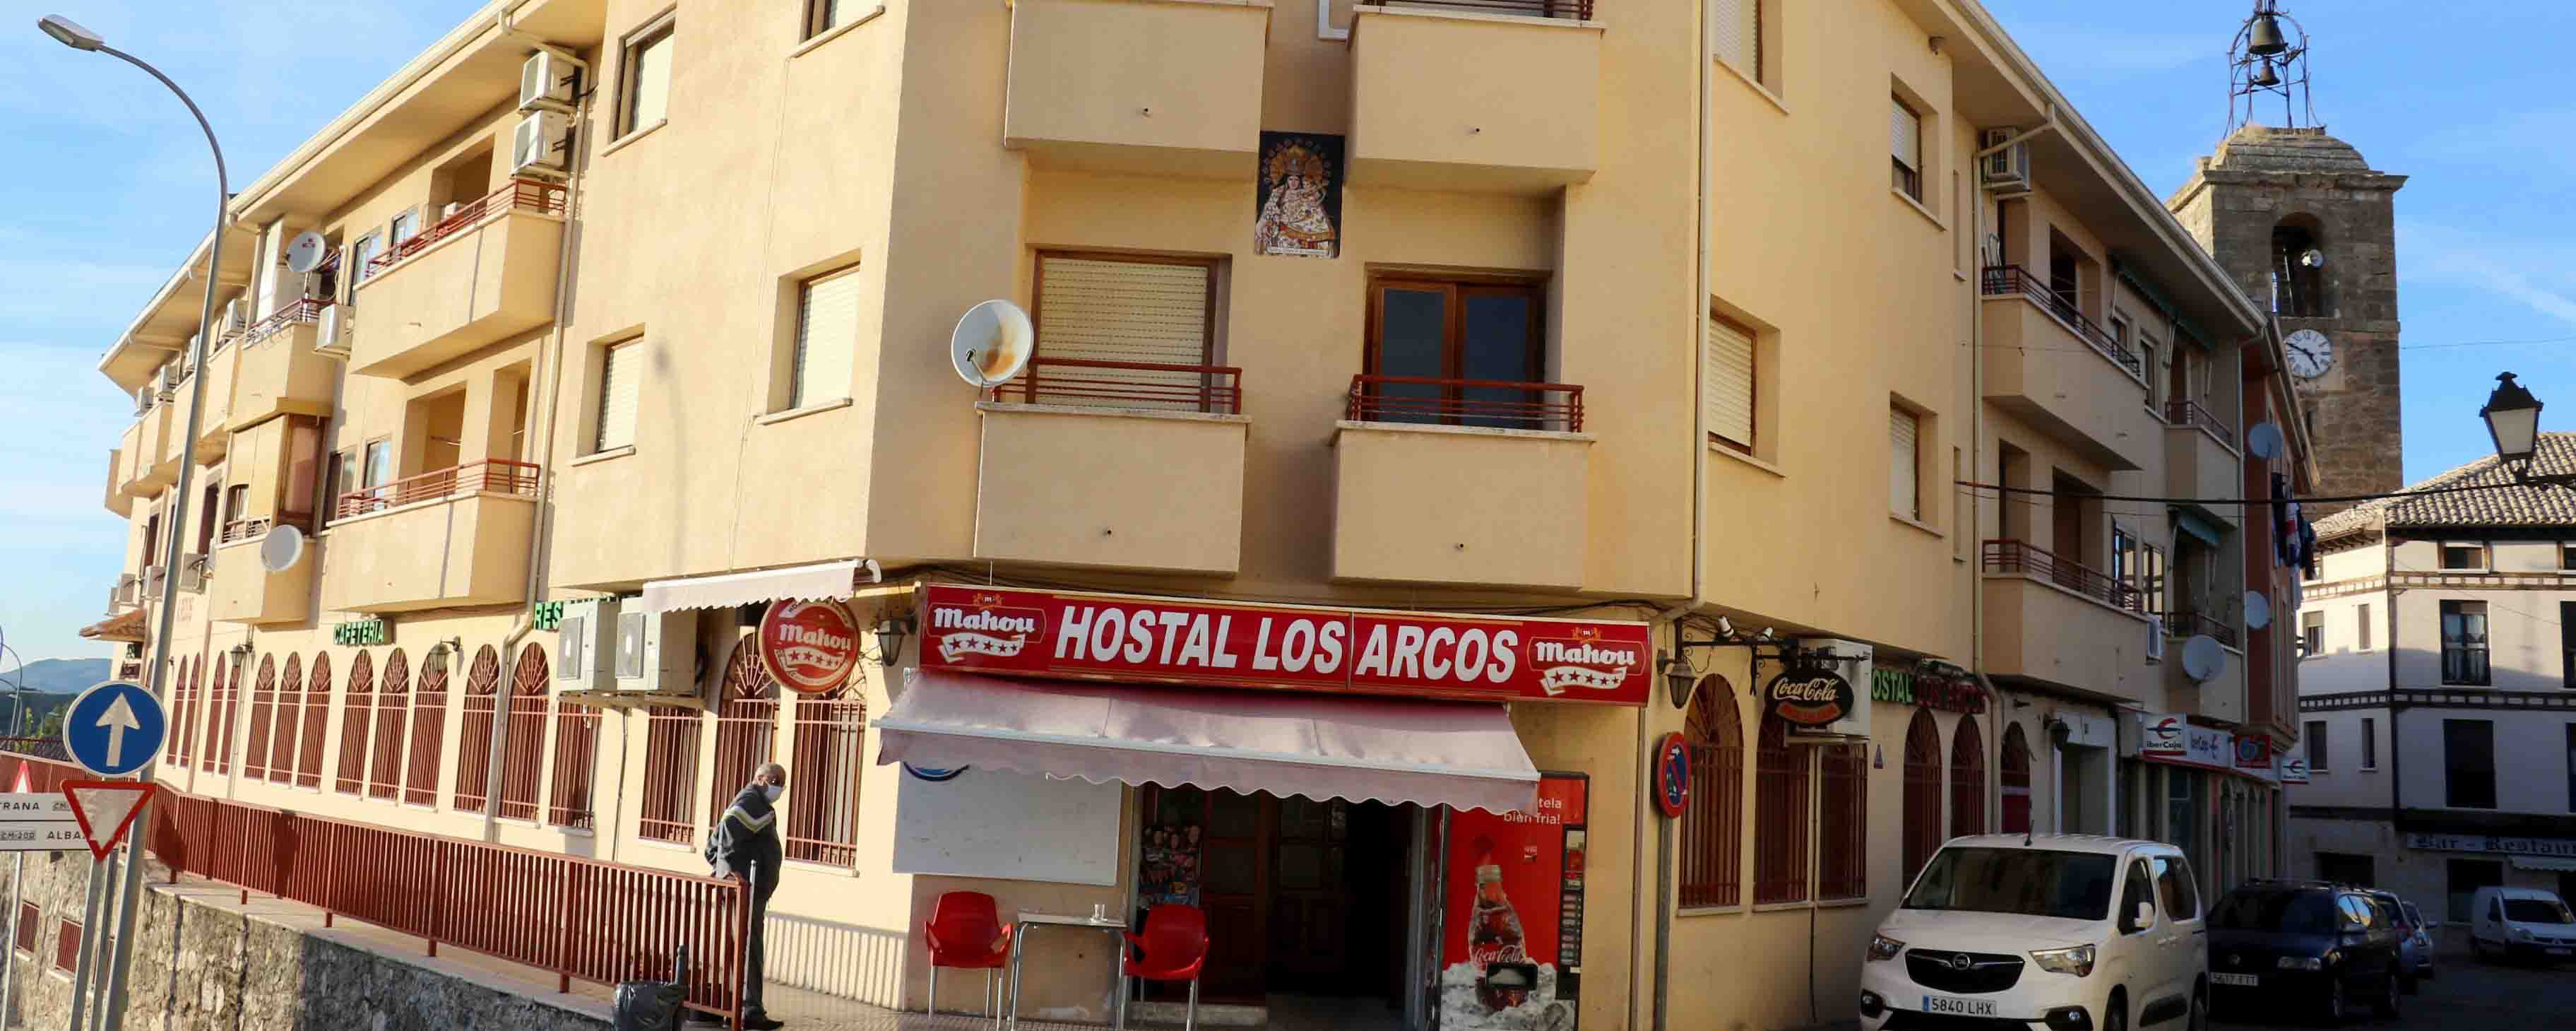 Hostal Los Arcos, un negocio familiar con mÃ¡s de treinta aÃ±os de historia en Almonacid de Zorita